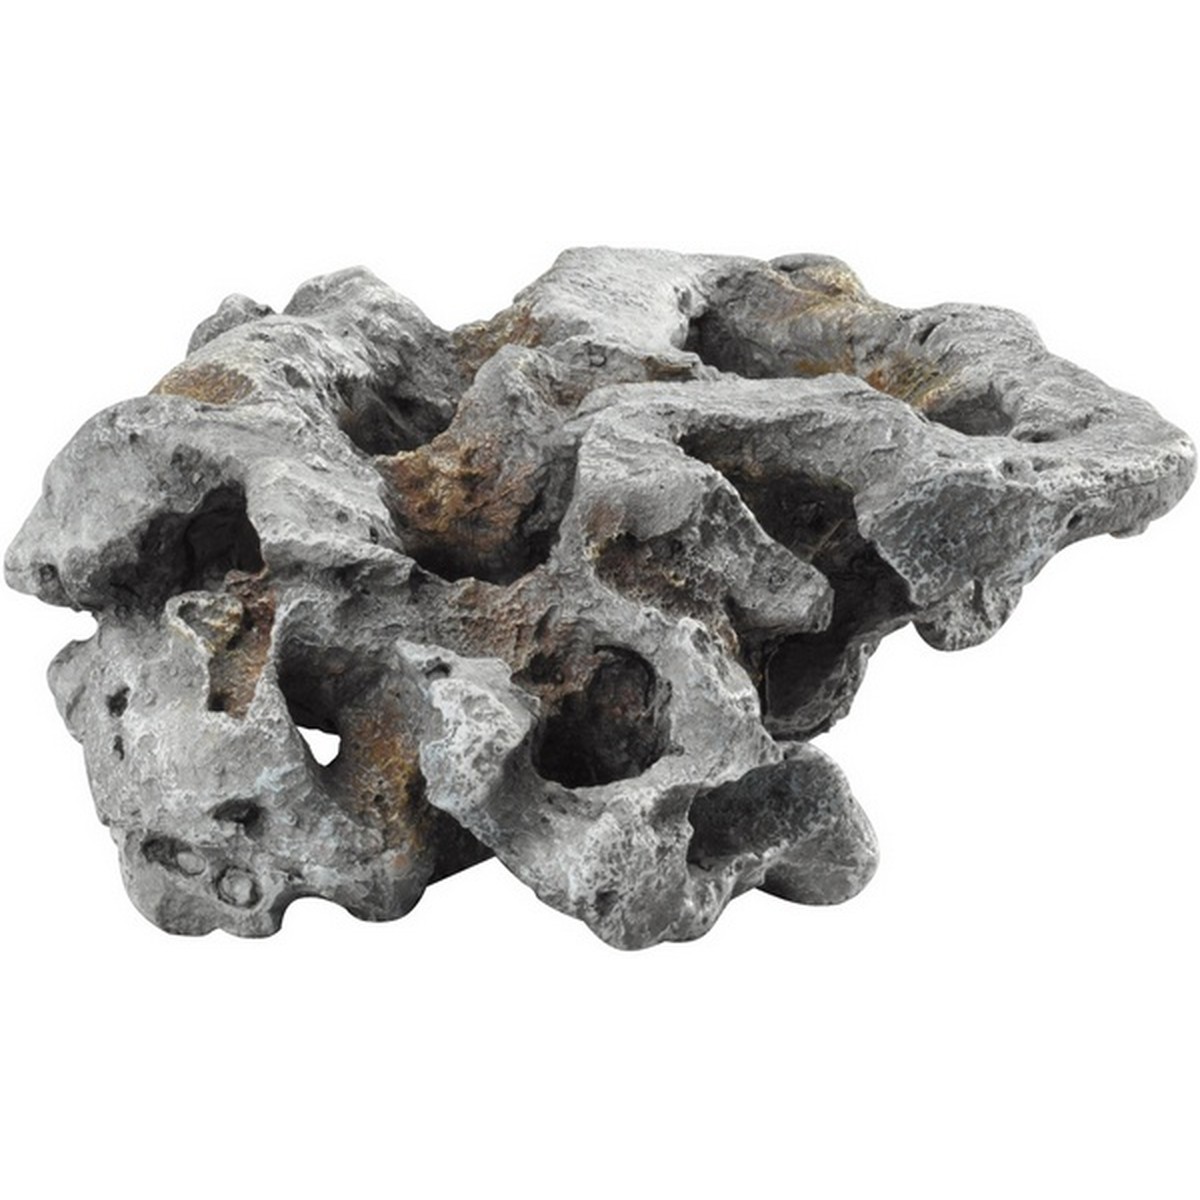   Décor-pierre Combo-Lava L 295x260x90mm  29,5x26x9cm